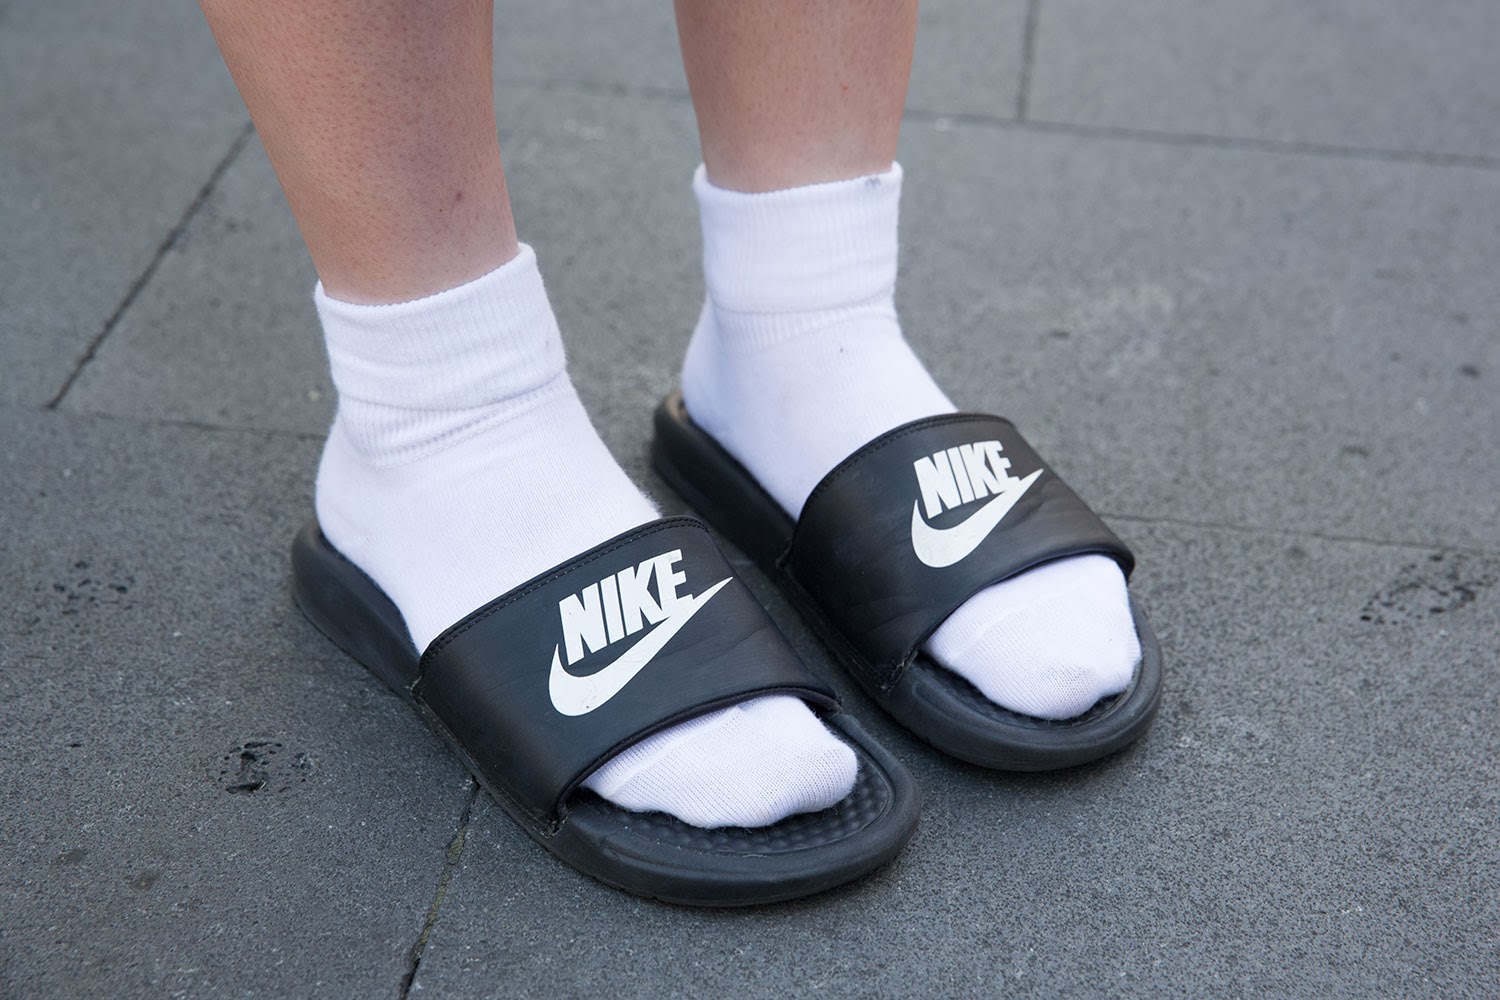 nike sandals and socks